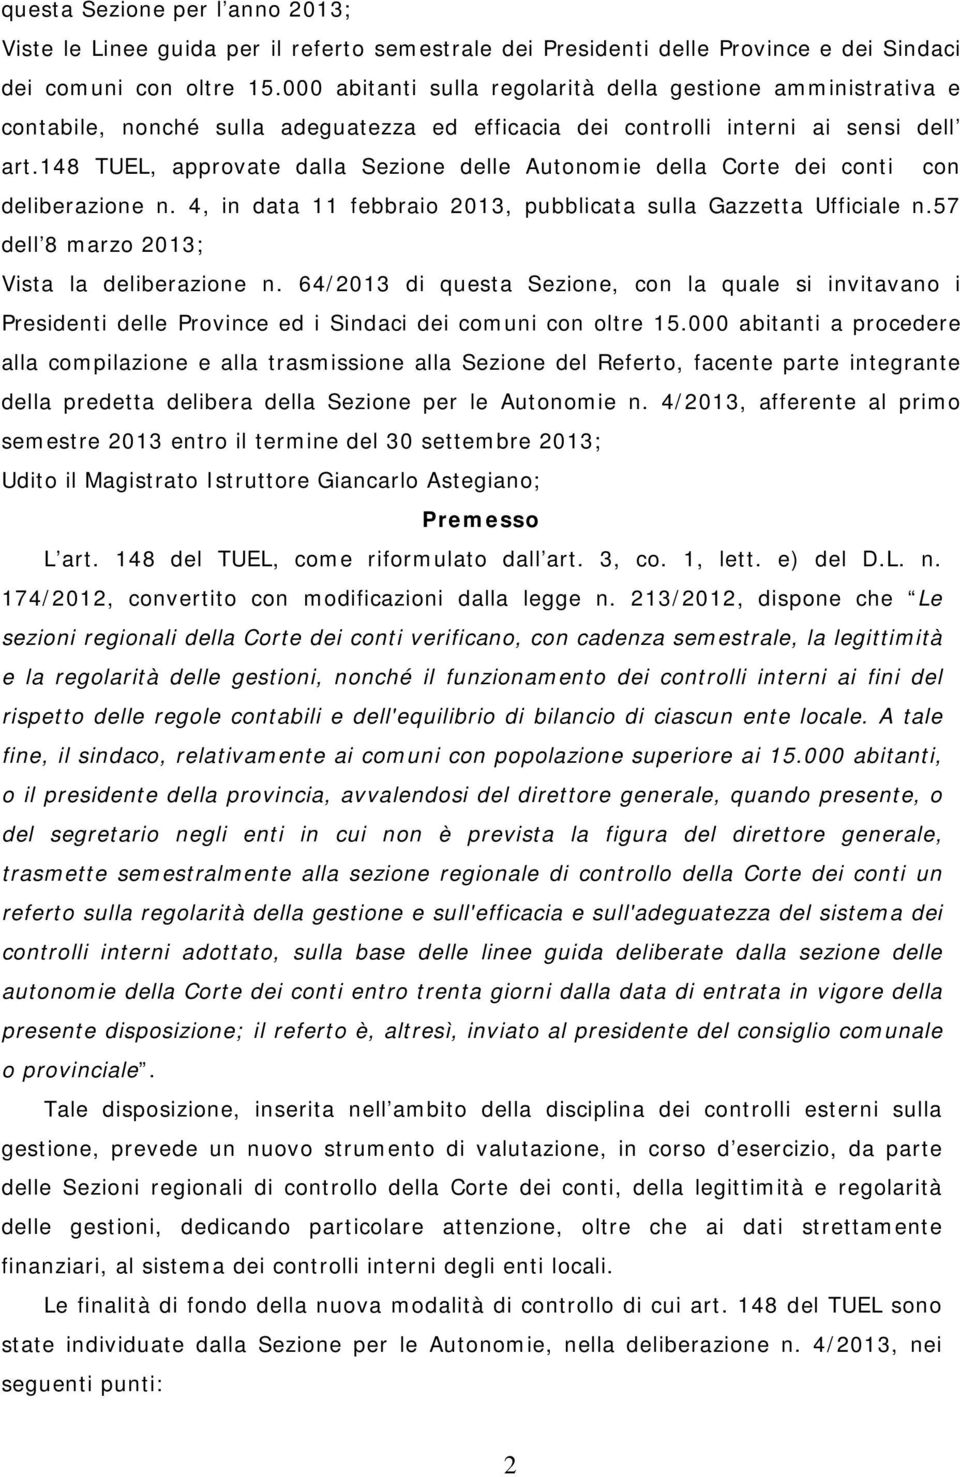 148 TUEL, approvate dalla Sezione delle Autonomie della Corte dei conti con deliberazione n. 4, in data 11 febbraio 2013, pubblicata sulla Gazzetta Ufficiale n.